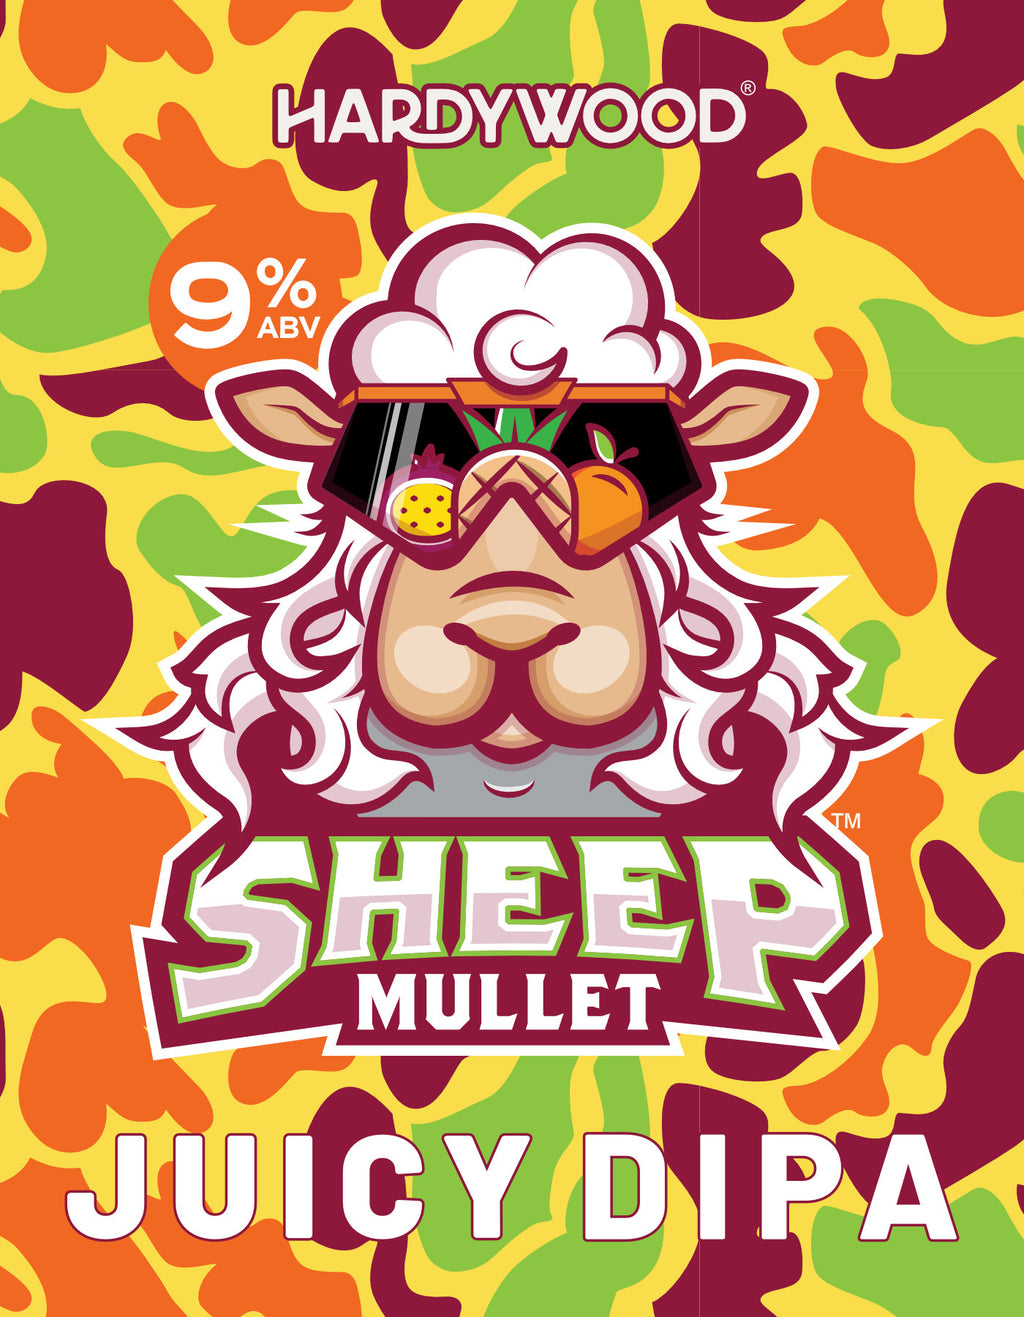 Juicy Sheep Mullet